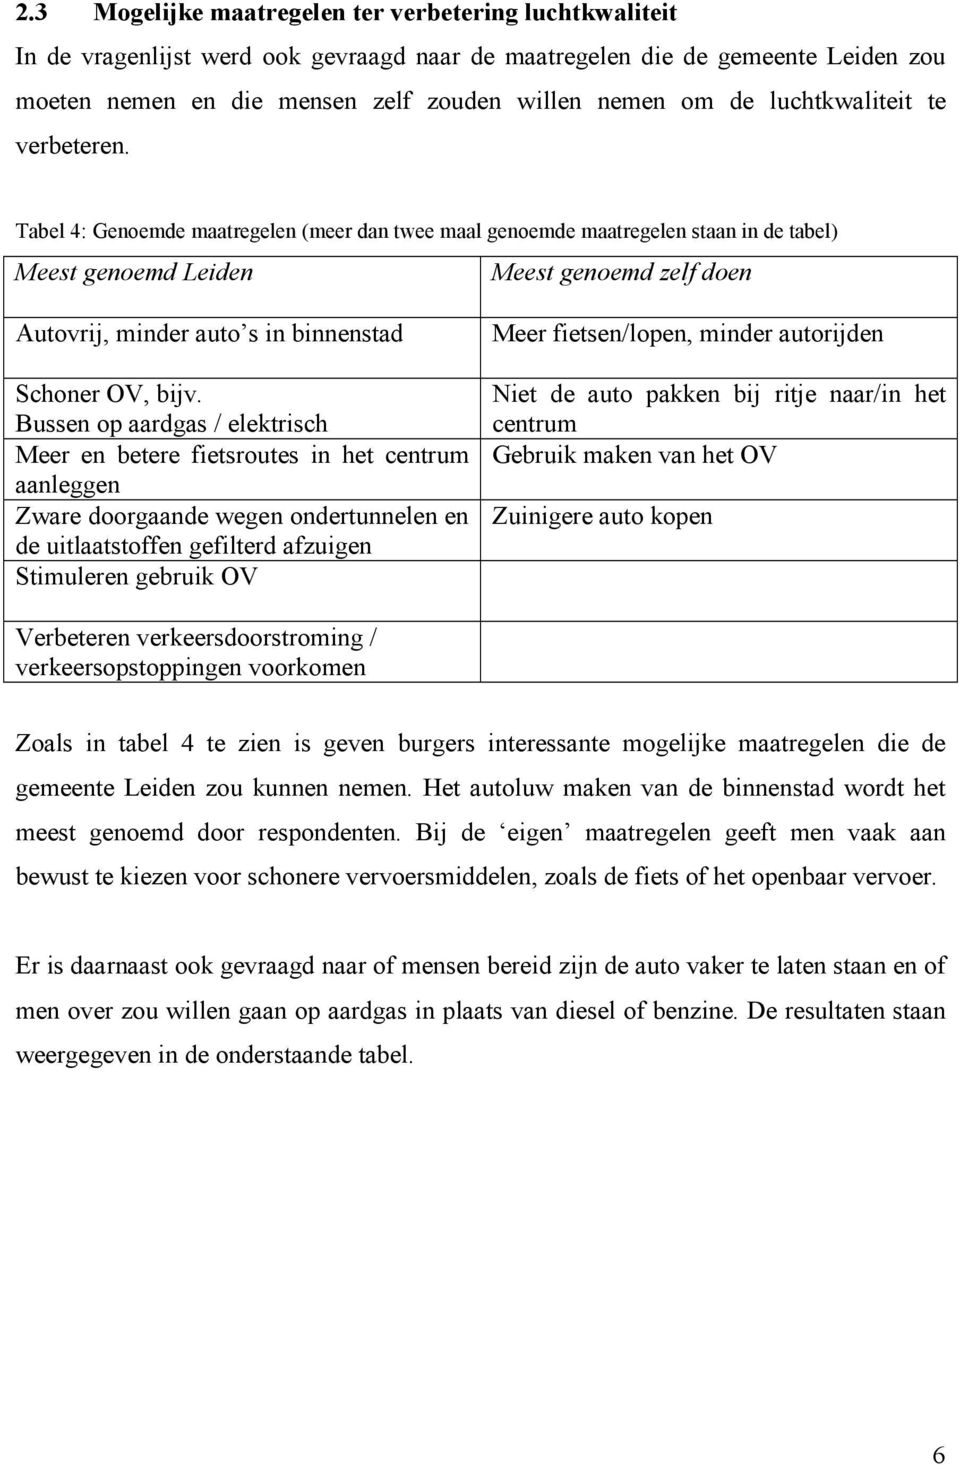 Tabel 4: Genoemde maatregelen (meer dan twee maal genoemde maatregelen staan in de tabel) Meest genoemd Leiden Meest genoemd zelf doen Autovrij, minder auto s in binnenstad Schoner OV, bijv.